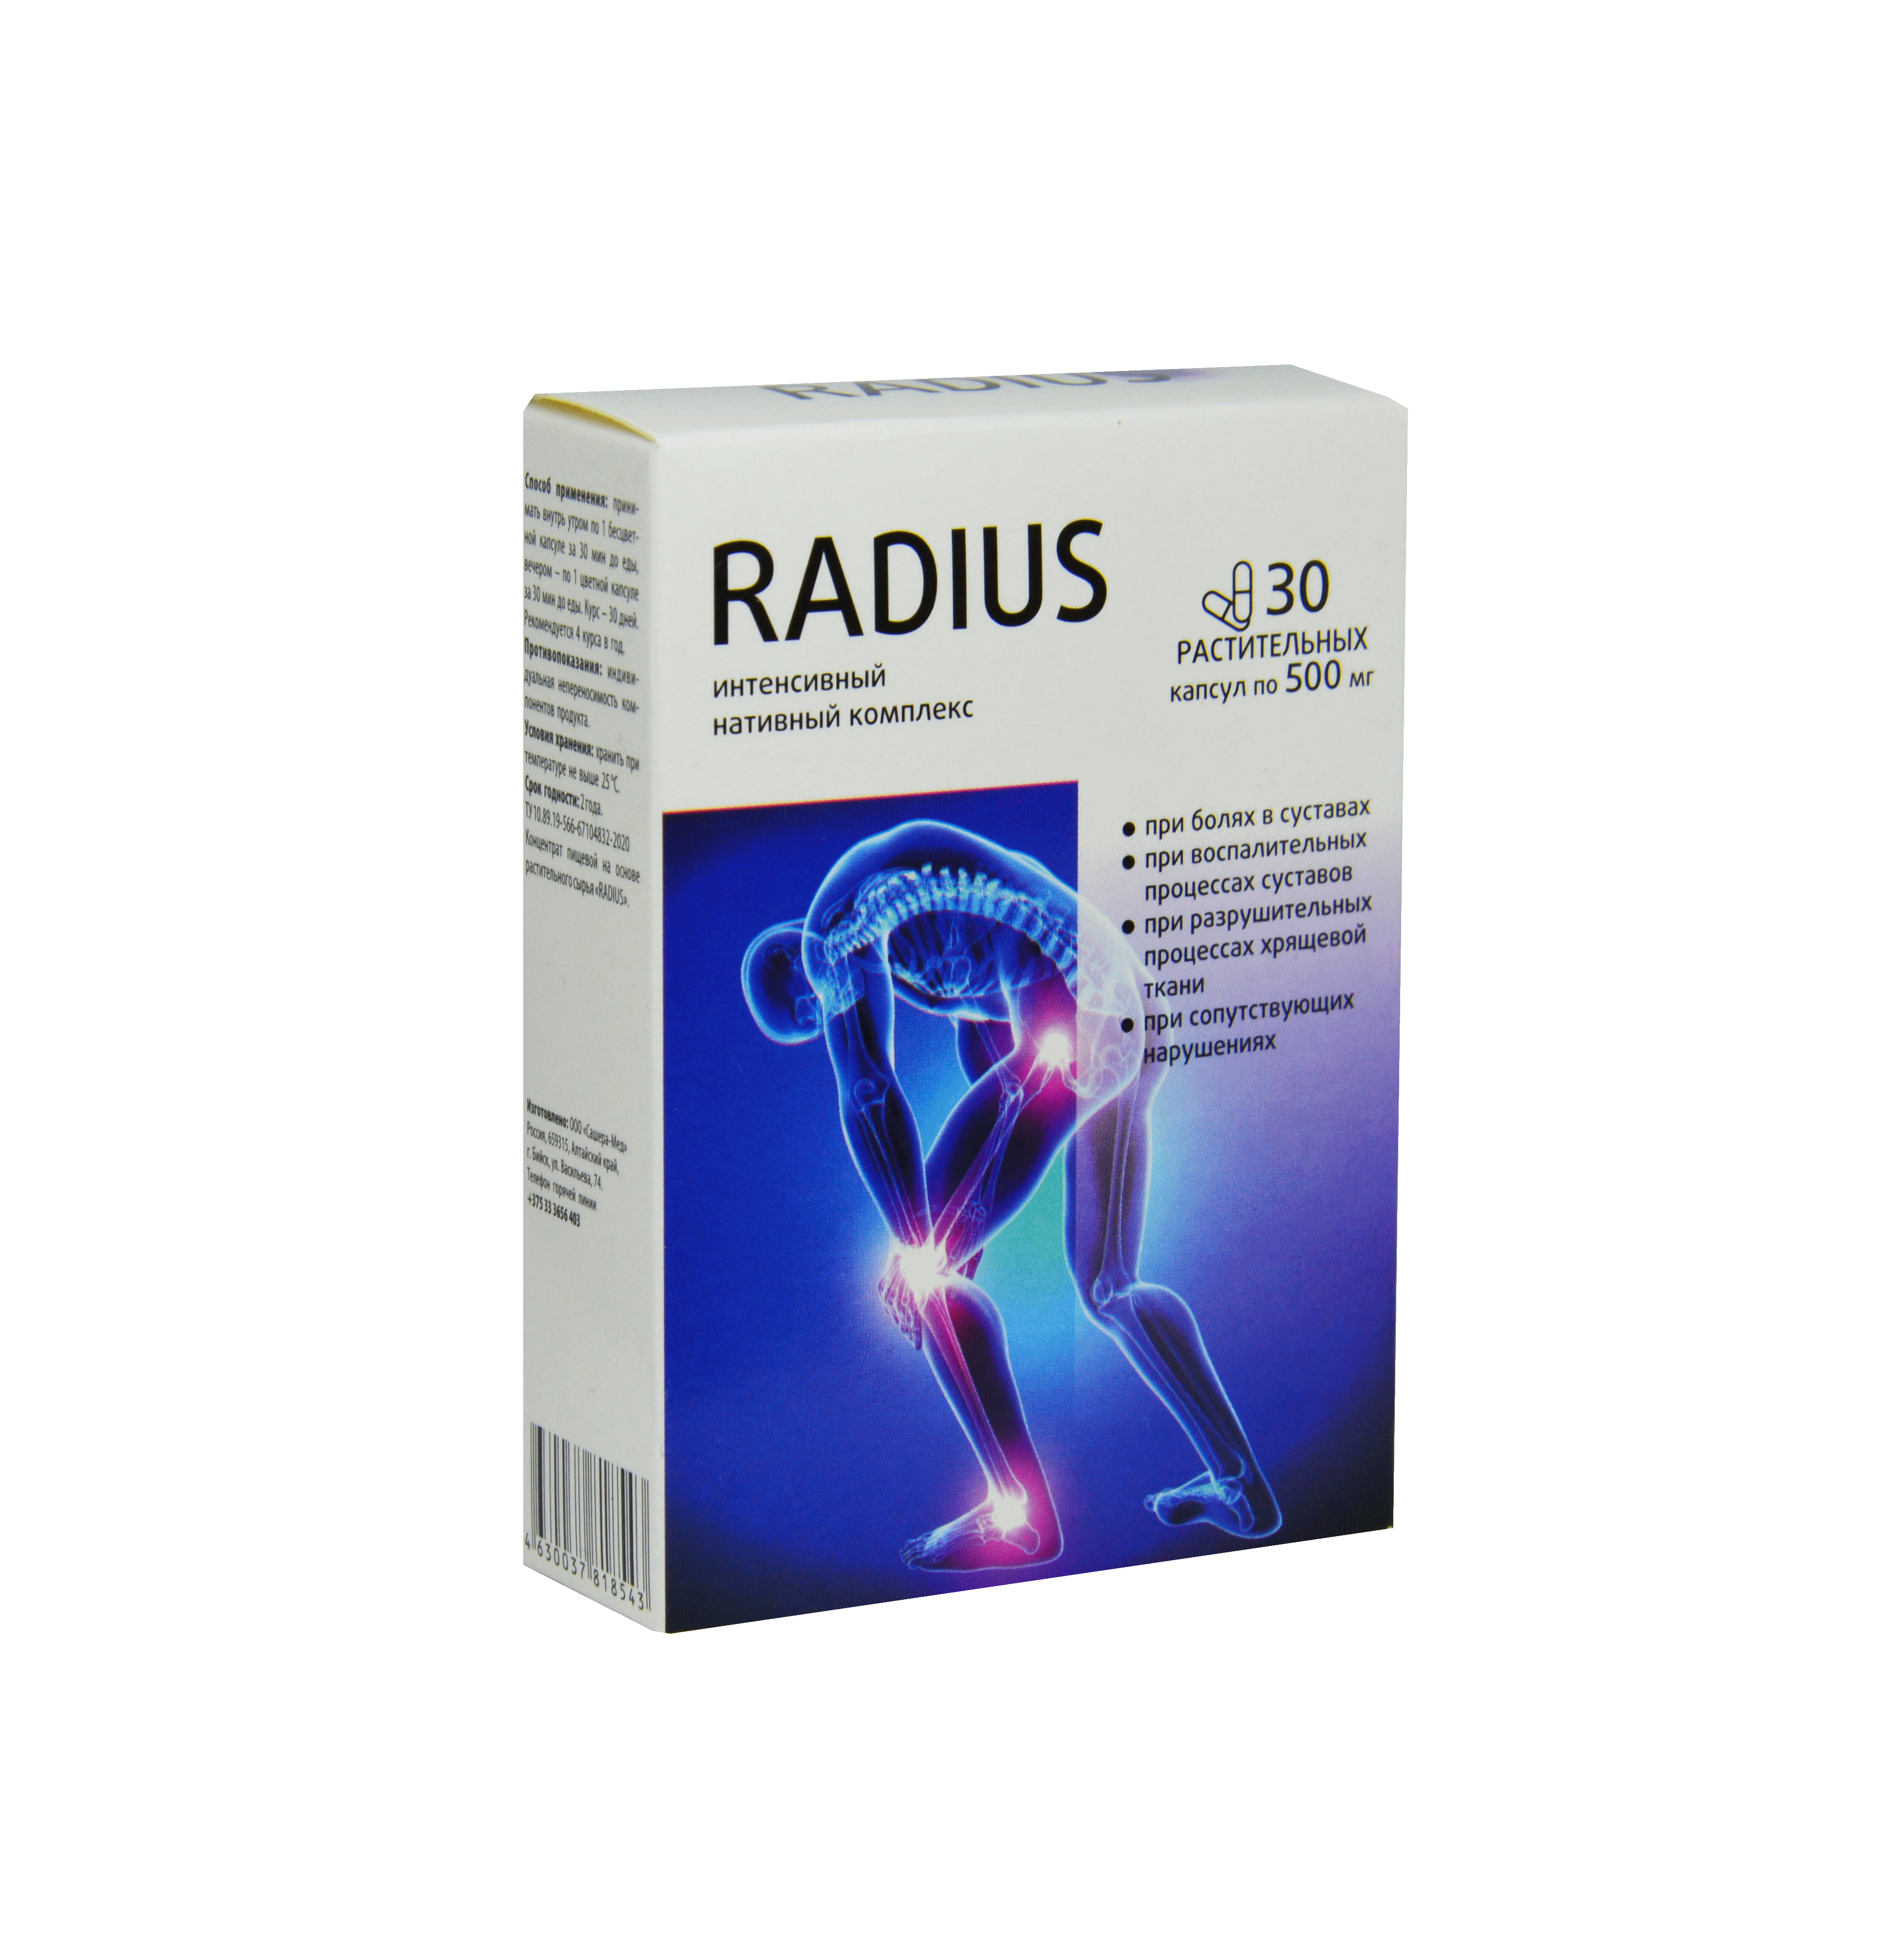 Radius - KZ